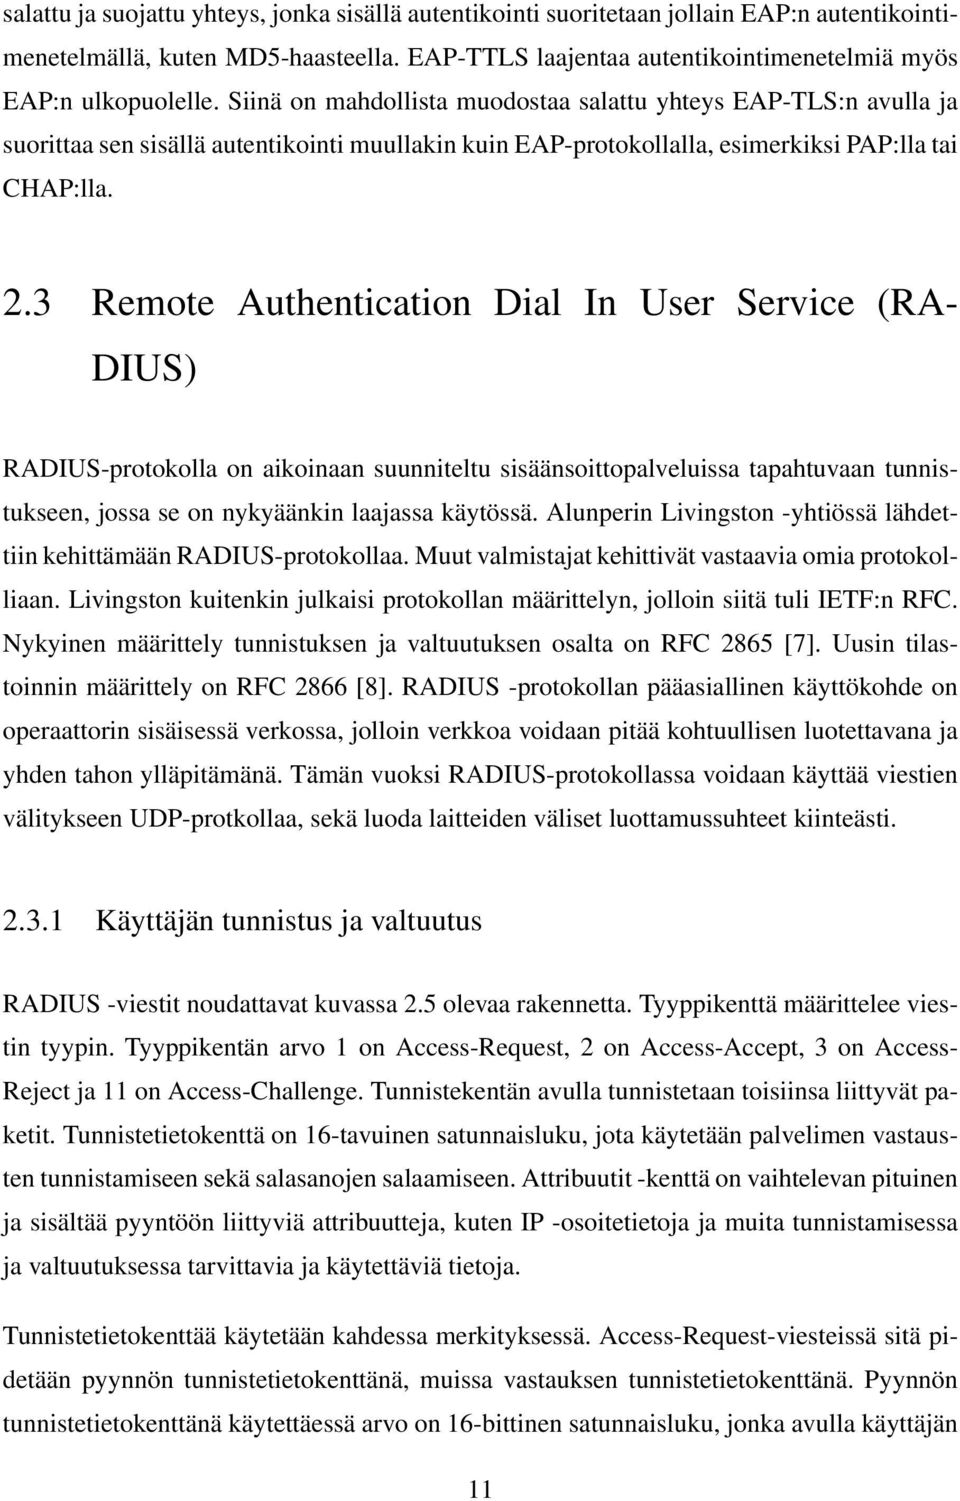 3 Remote Authentication Dial In User Service (RA- DIUS) RADIUS-protokolla on aikoinaan suunniteltu sisäänsoittopalveluissa tapahtuvaan tunnistukseen, jossa se on nykyäänkin laajassa käytössä.